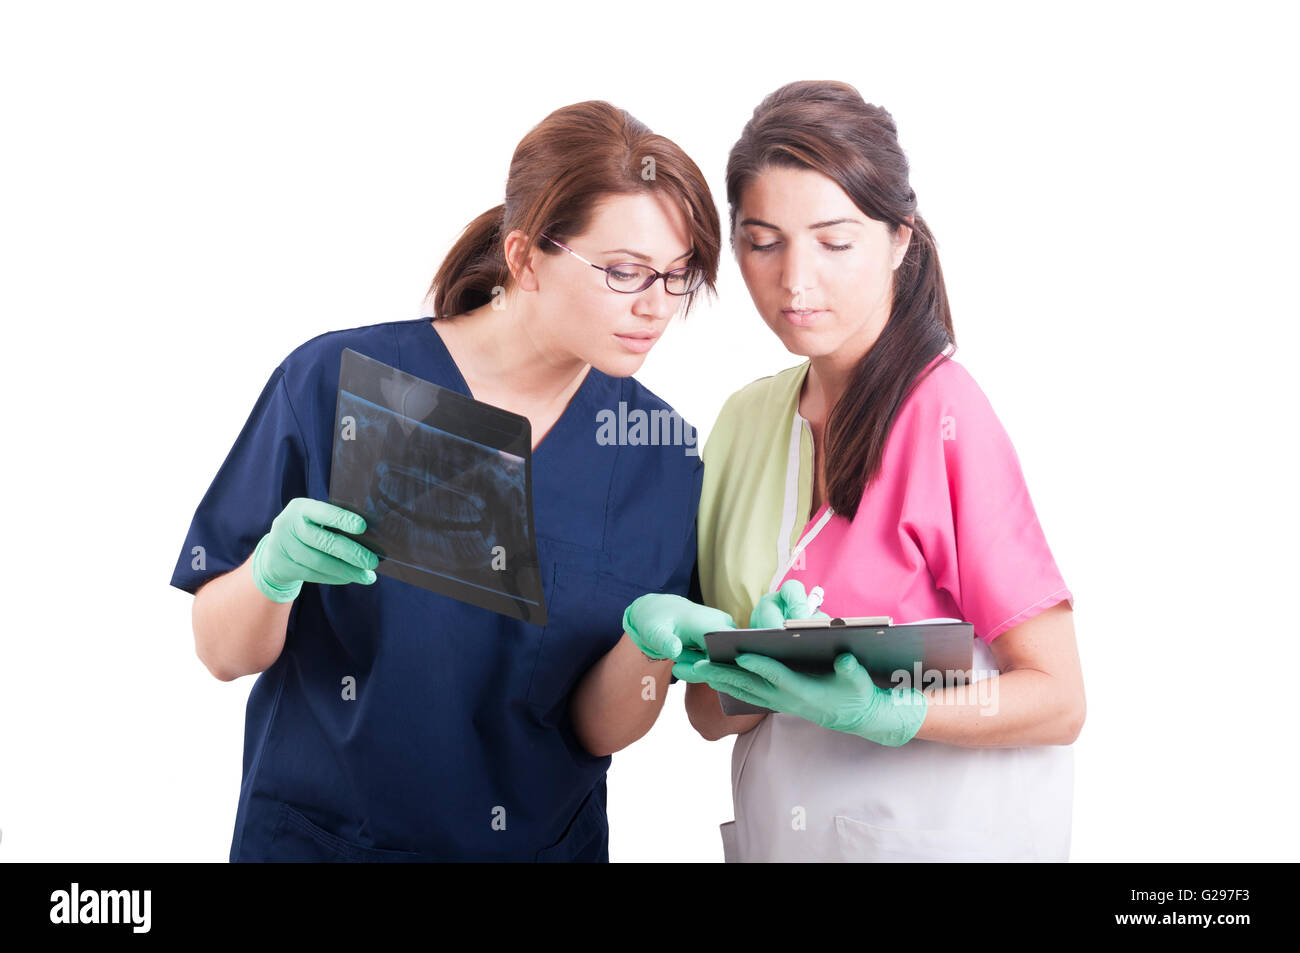 Professional team dentale analisi di raggi x o raggi x. Medici di sesso femminile su sfondo bianco Foto Stock